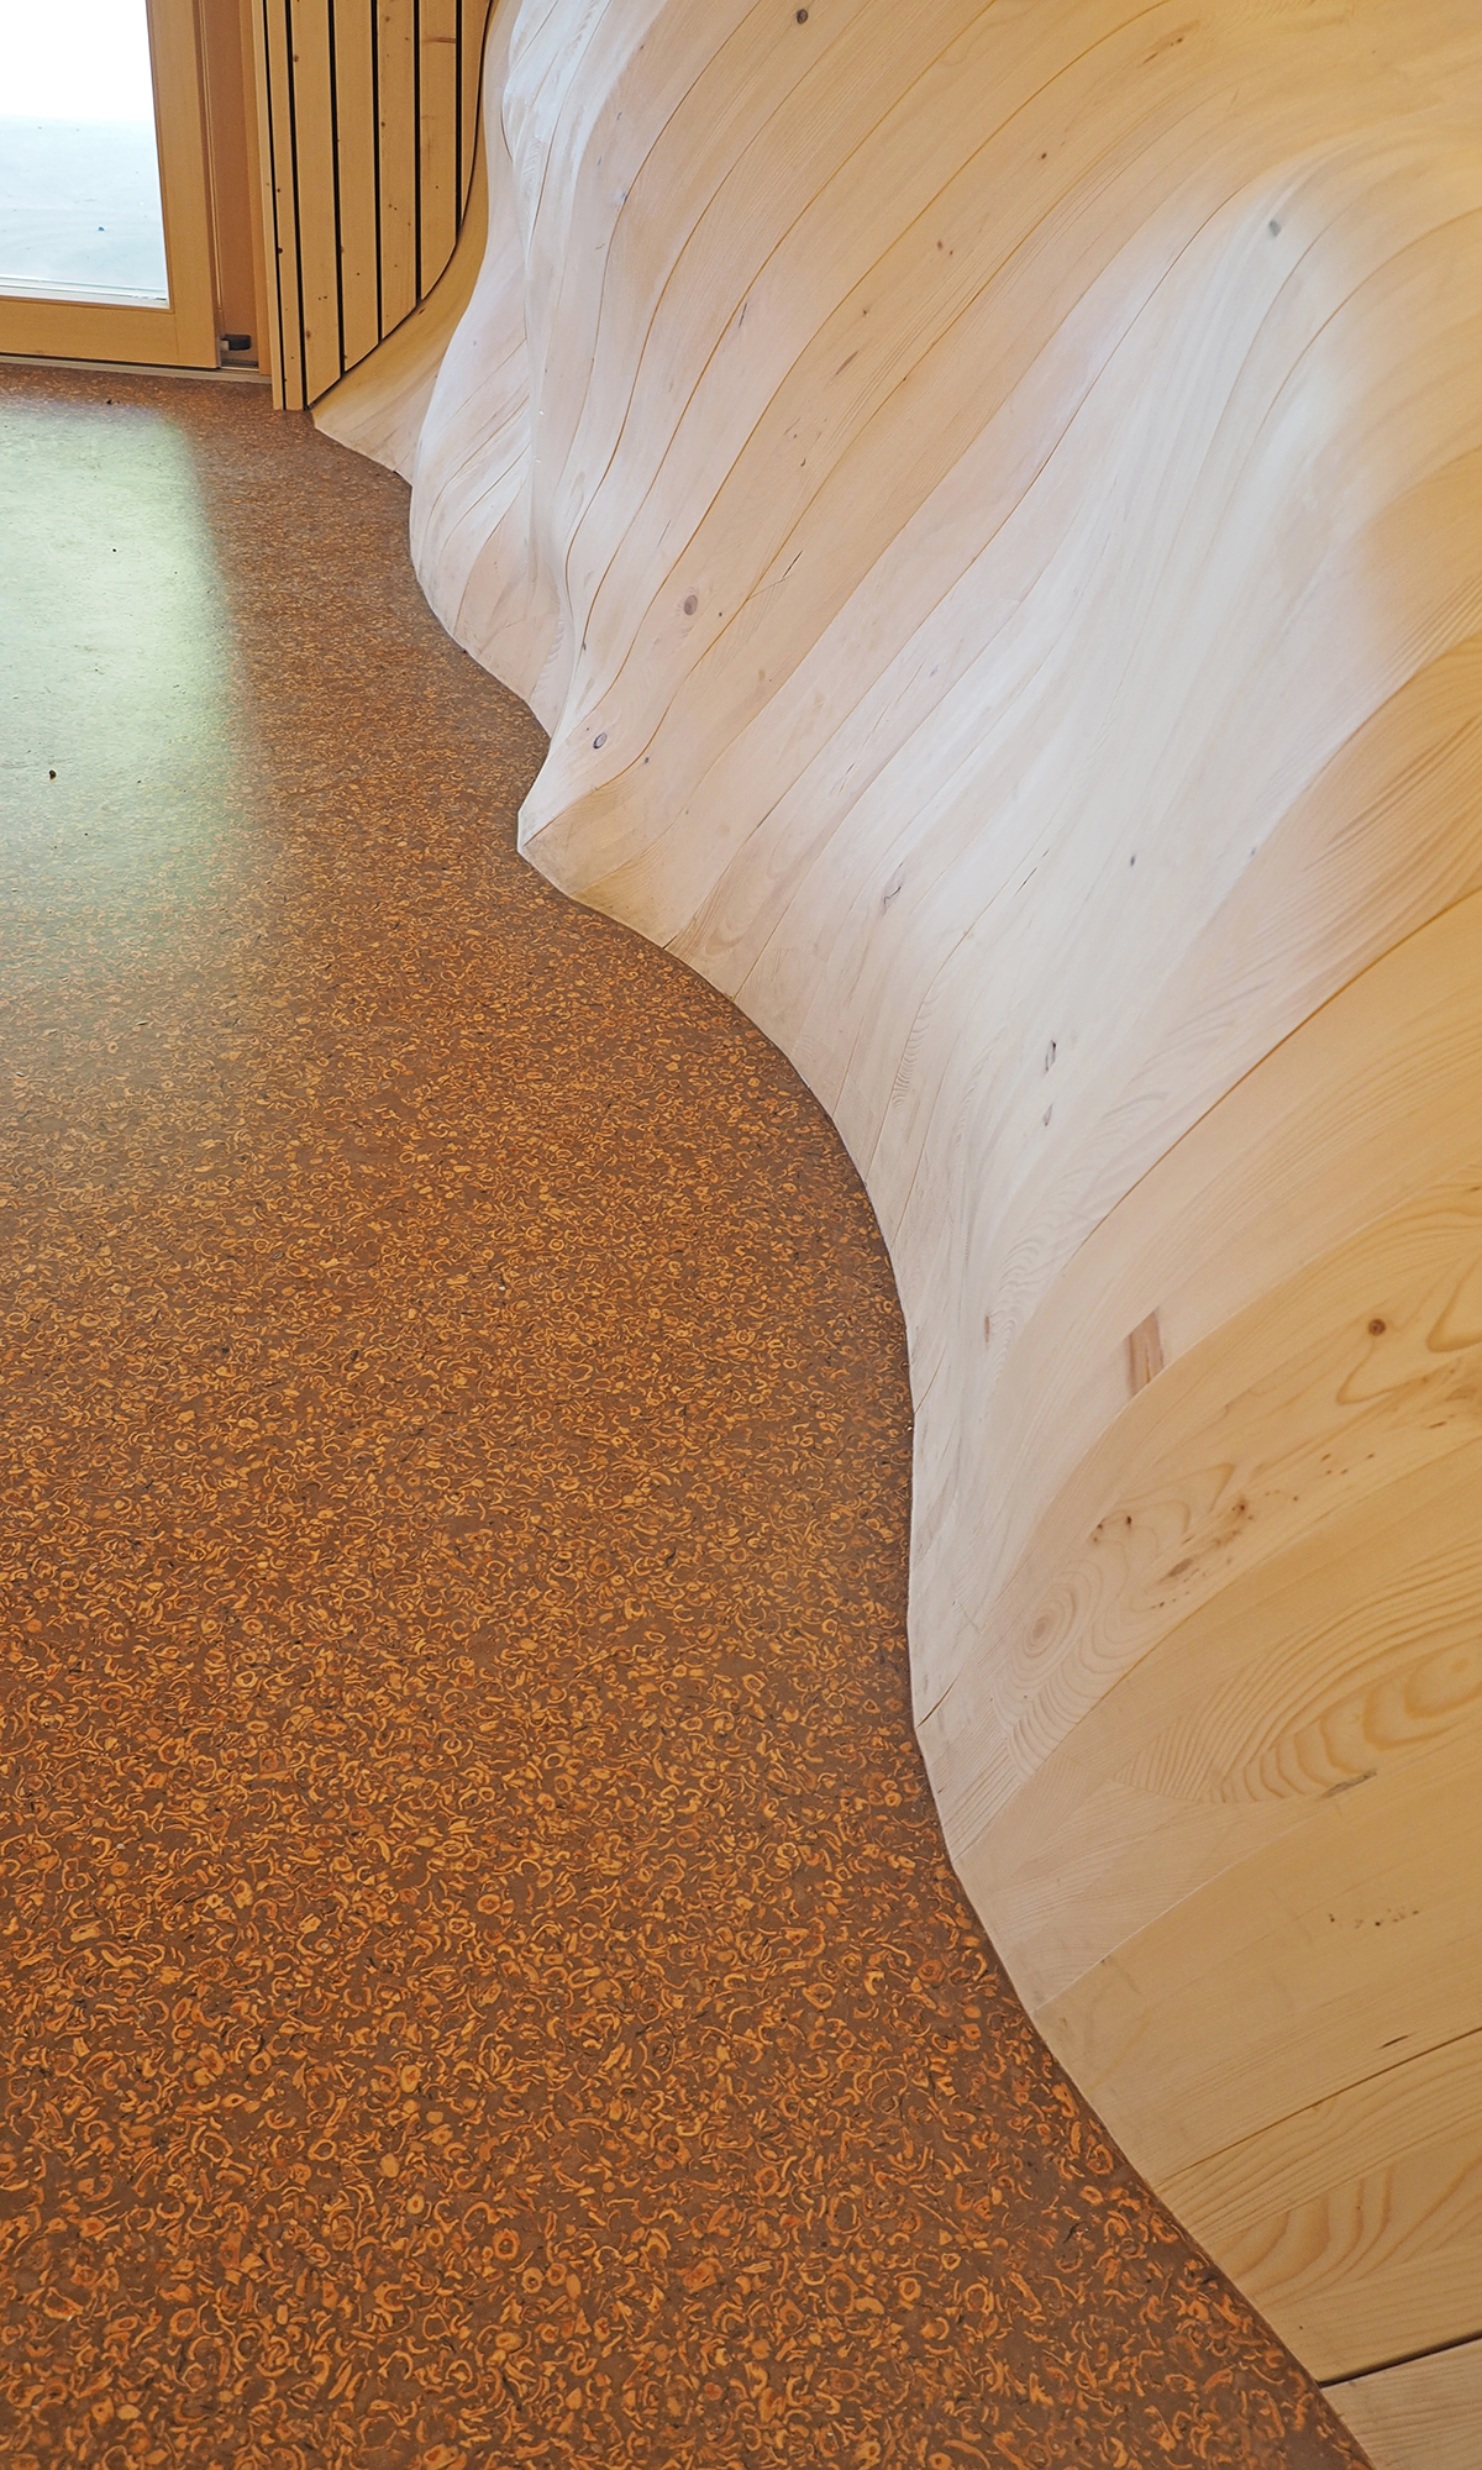 Les parois latérales sont composées de nombreux éléments en bois de forme unique; le matériau du plancher contient des coquilles de noix.